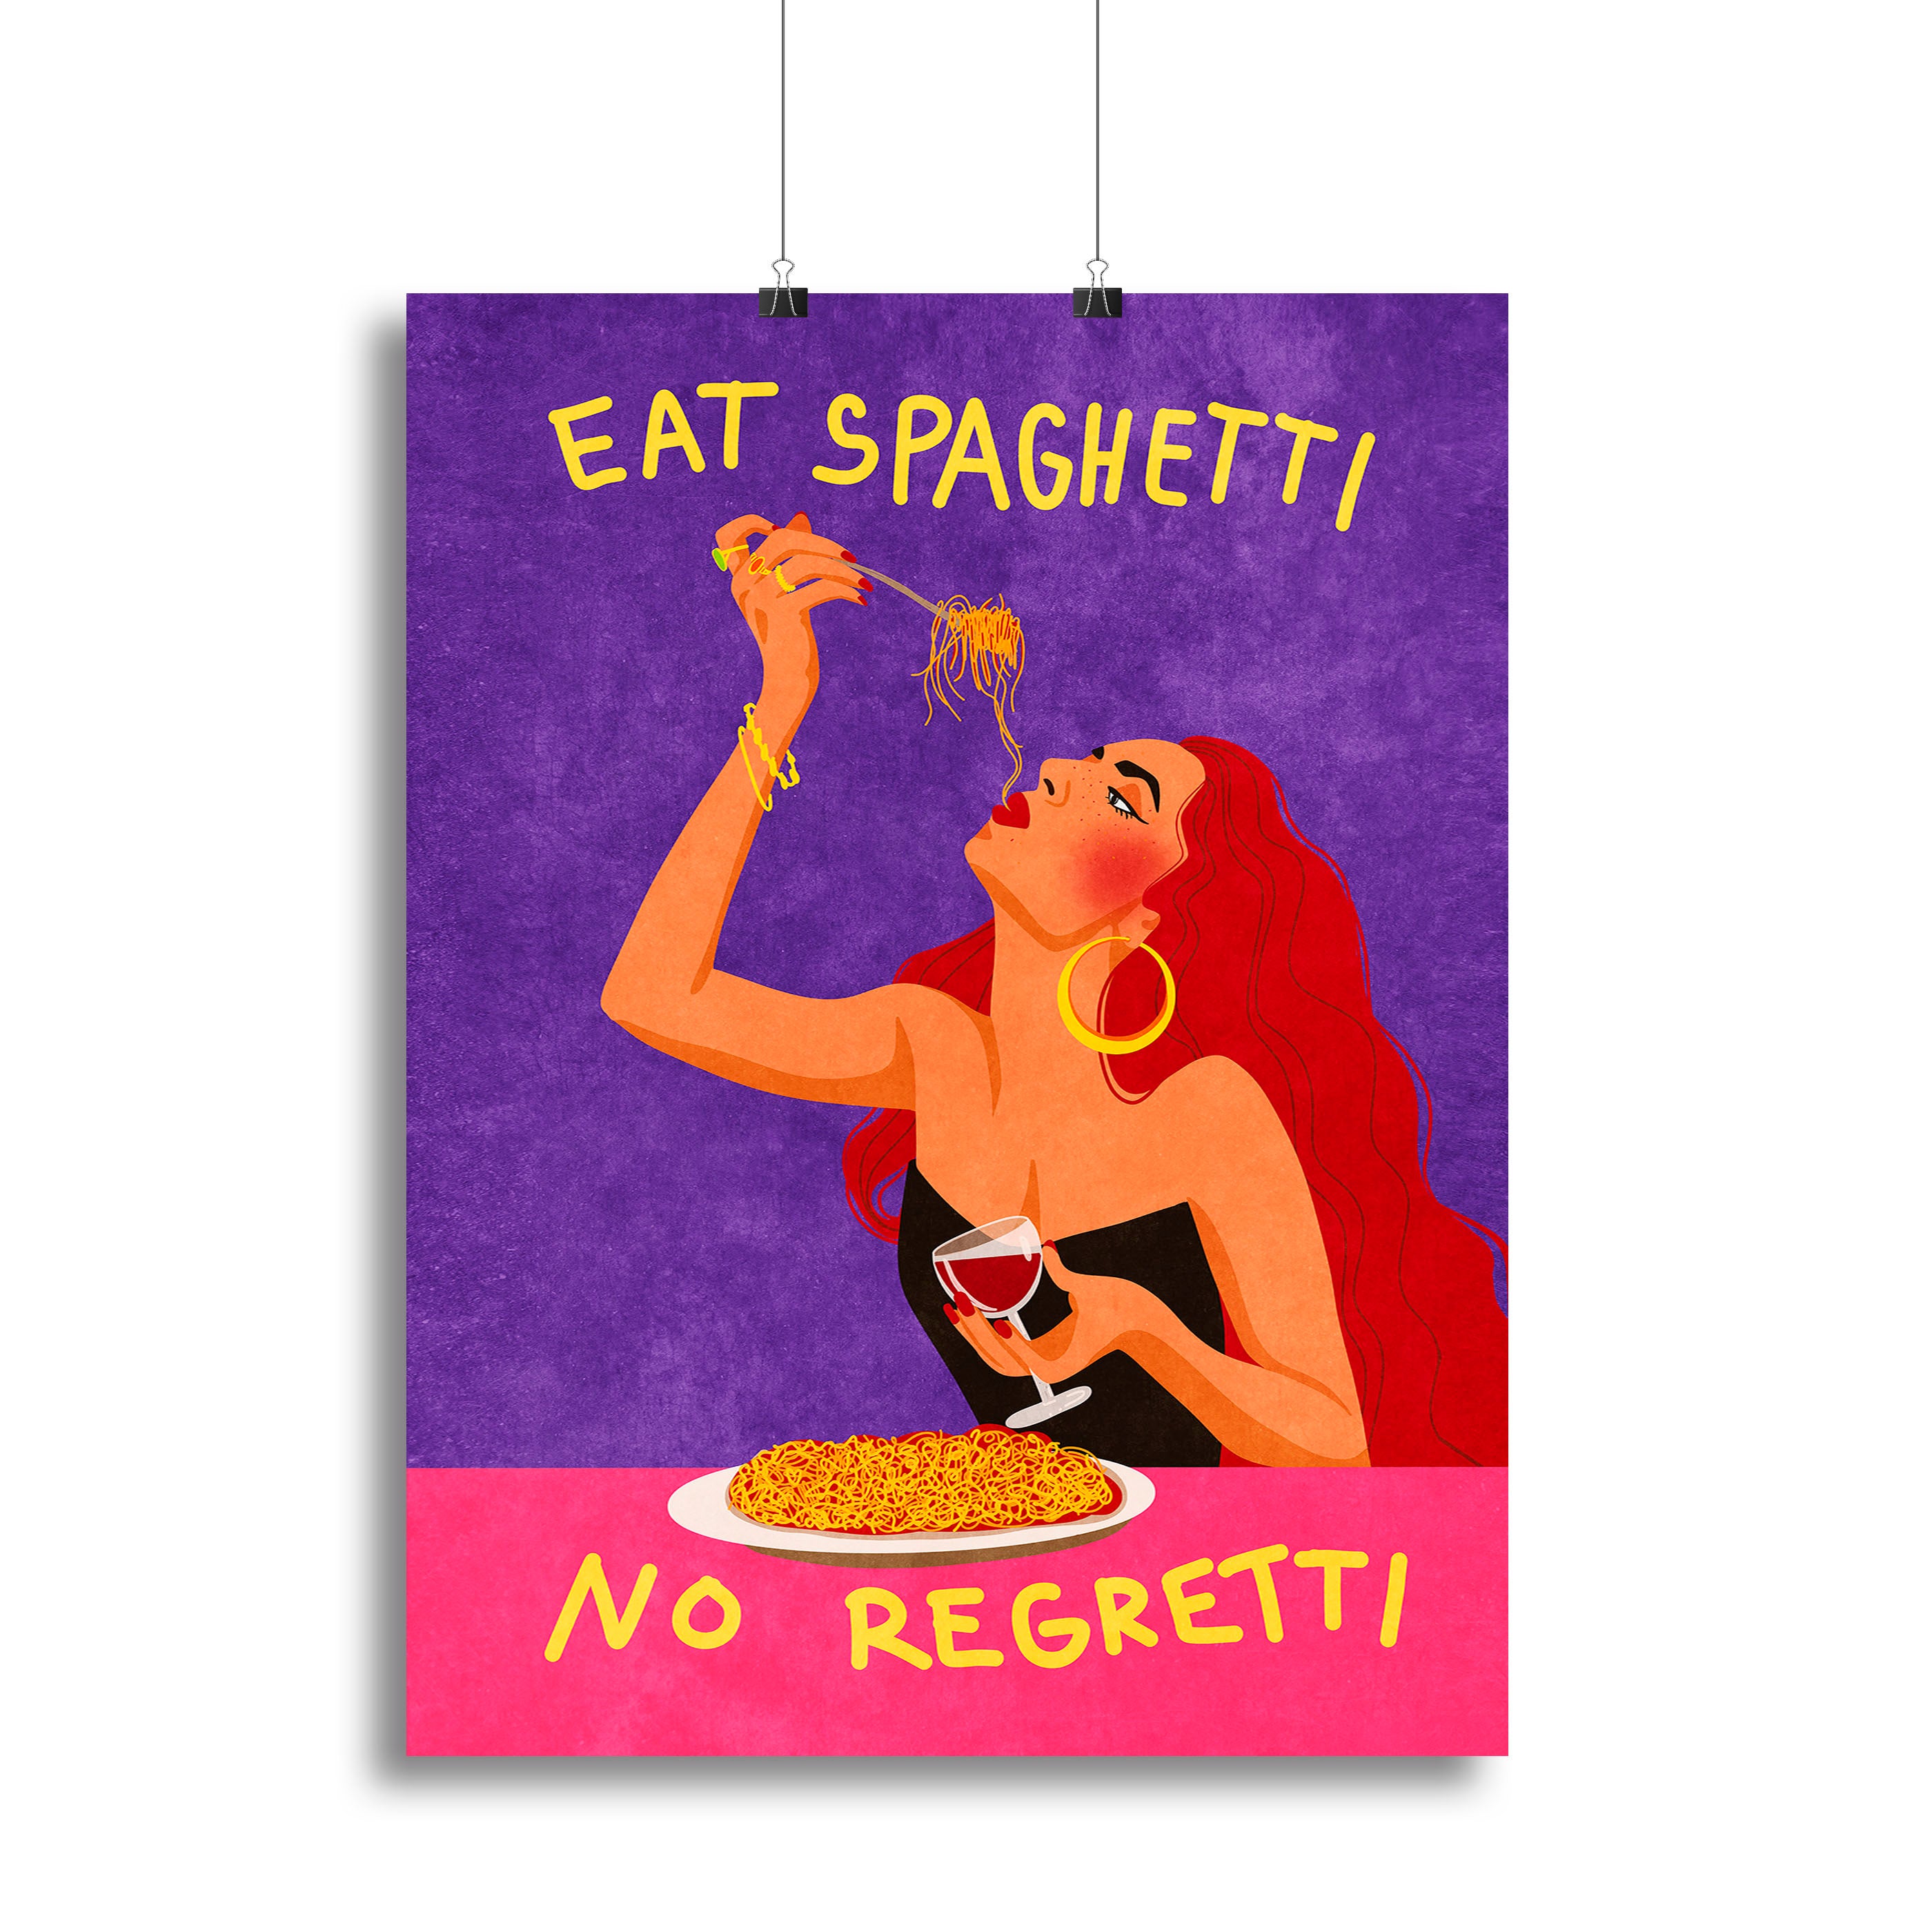 Eat spaghetti no regretti Canvas Print or Poster - Canvas Art Rocks - 2